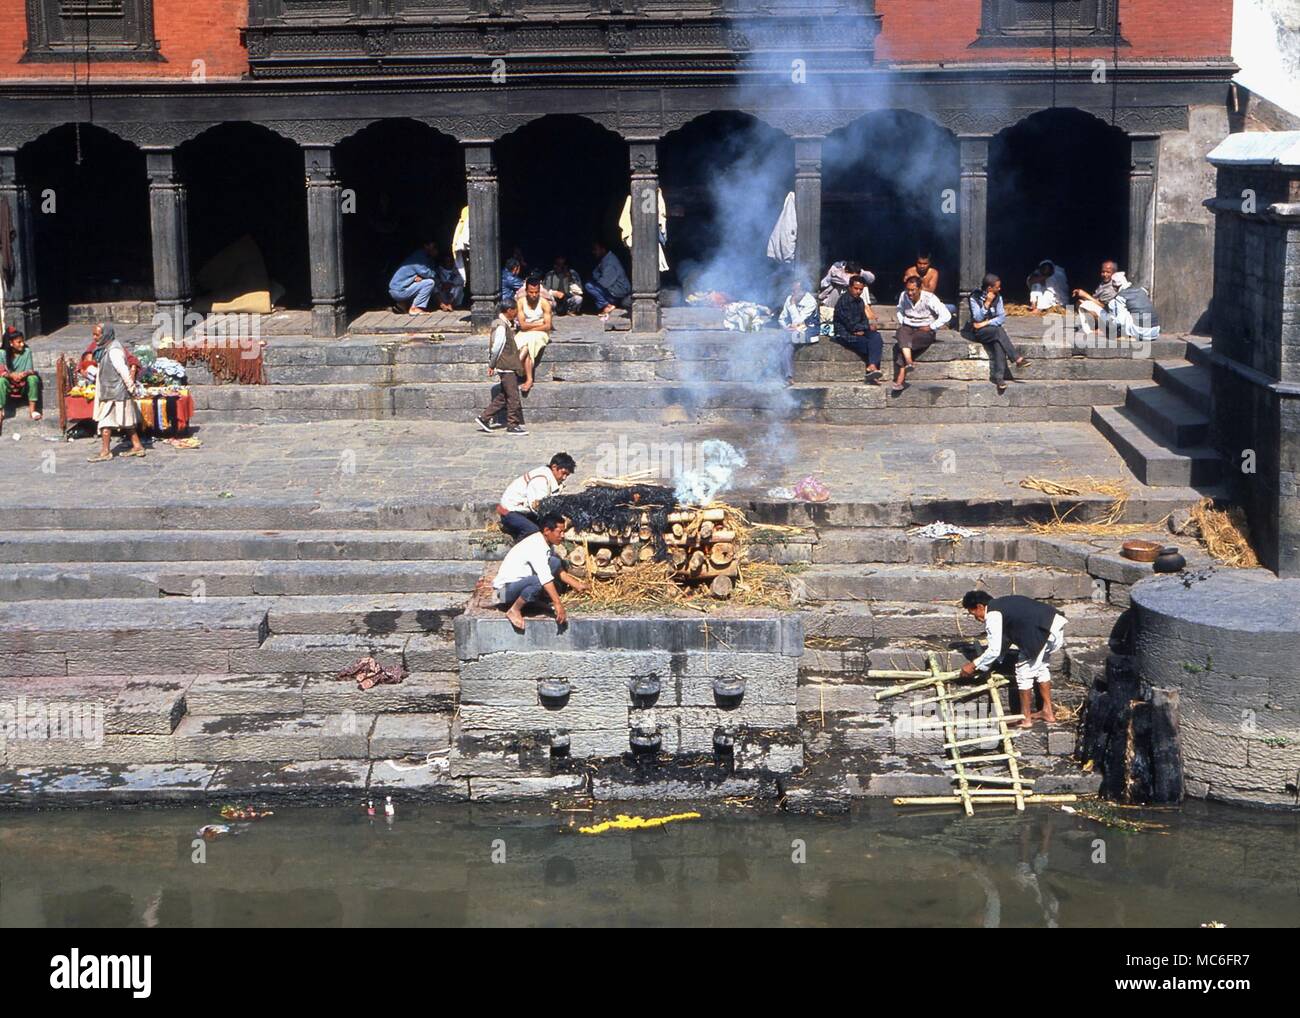 La crémation crémation hindou d'un corps mort par la rivière Bagmati (vallée de Katmandou). Le cadavre, retiré de ses sous vêtements, la paille est brûlé. Theshes sont ensuite jetés dans la rivière. Banque D'Images